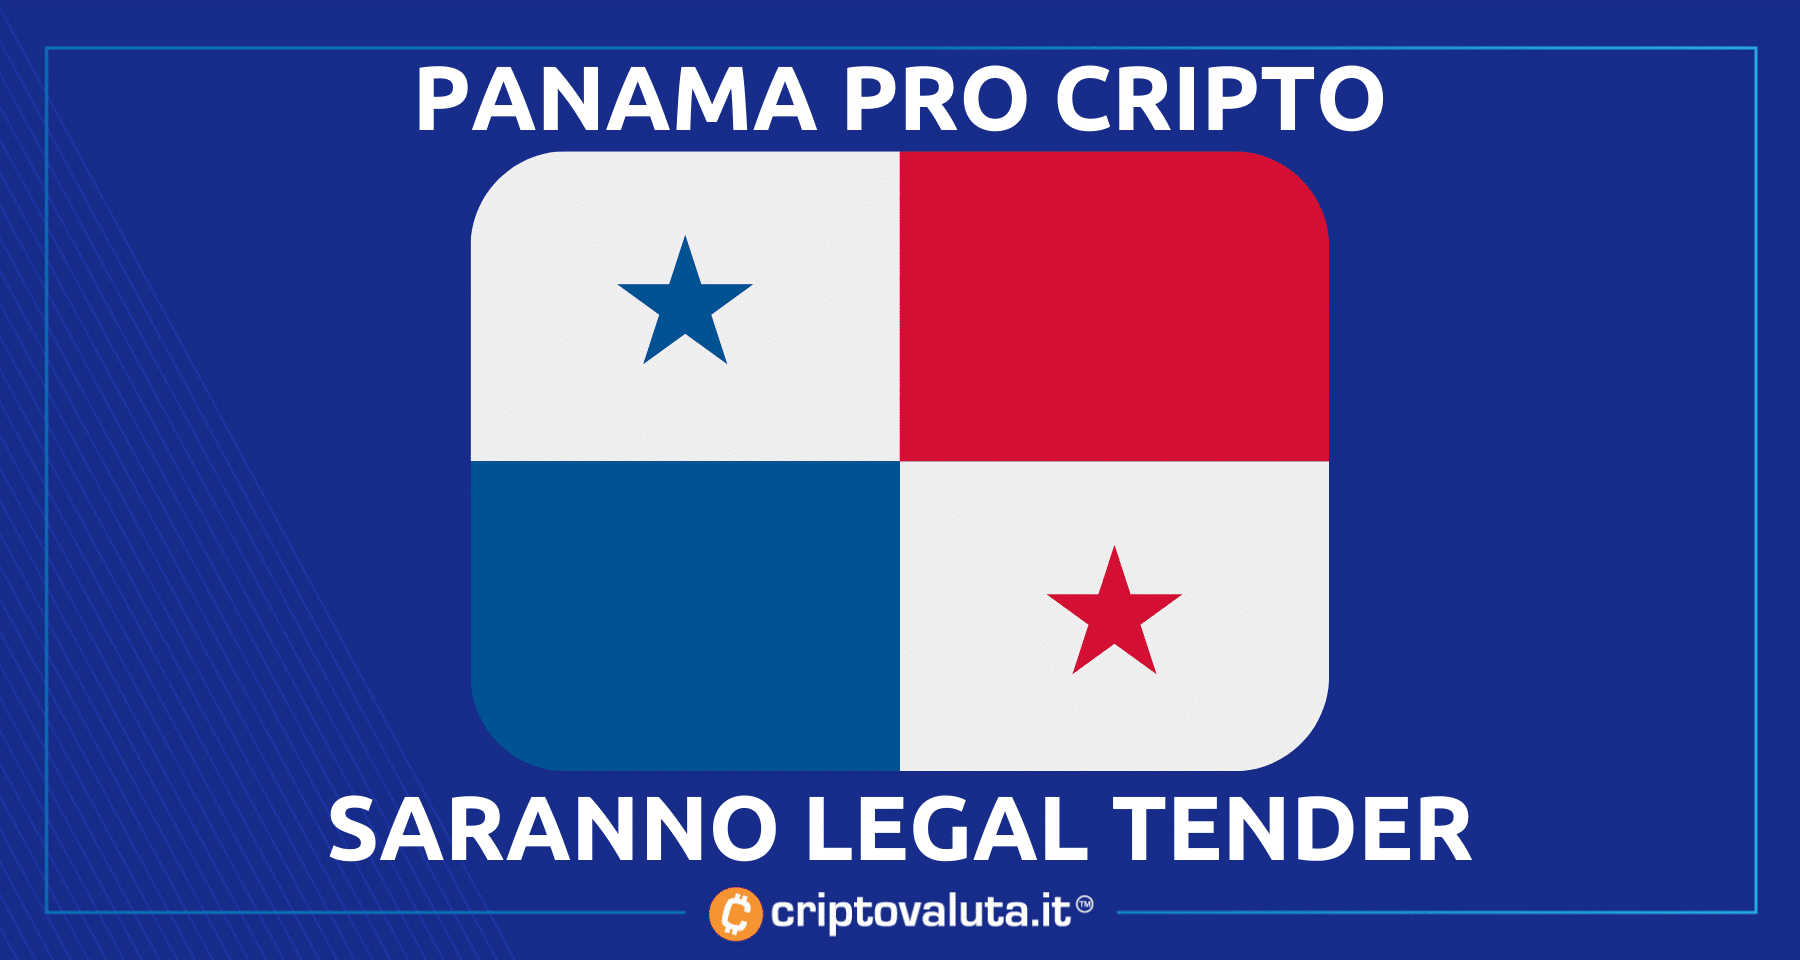 Panama: apre a Bitcoin e cripto | Saranno legal tender de facto